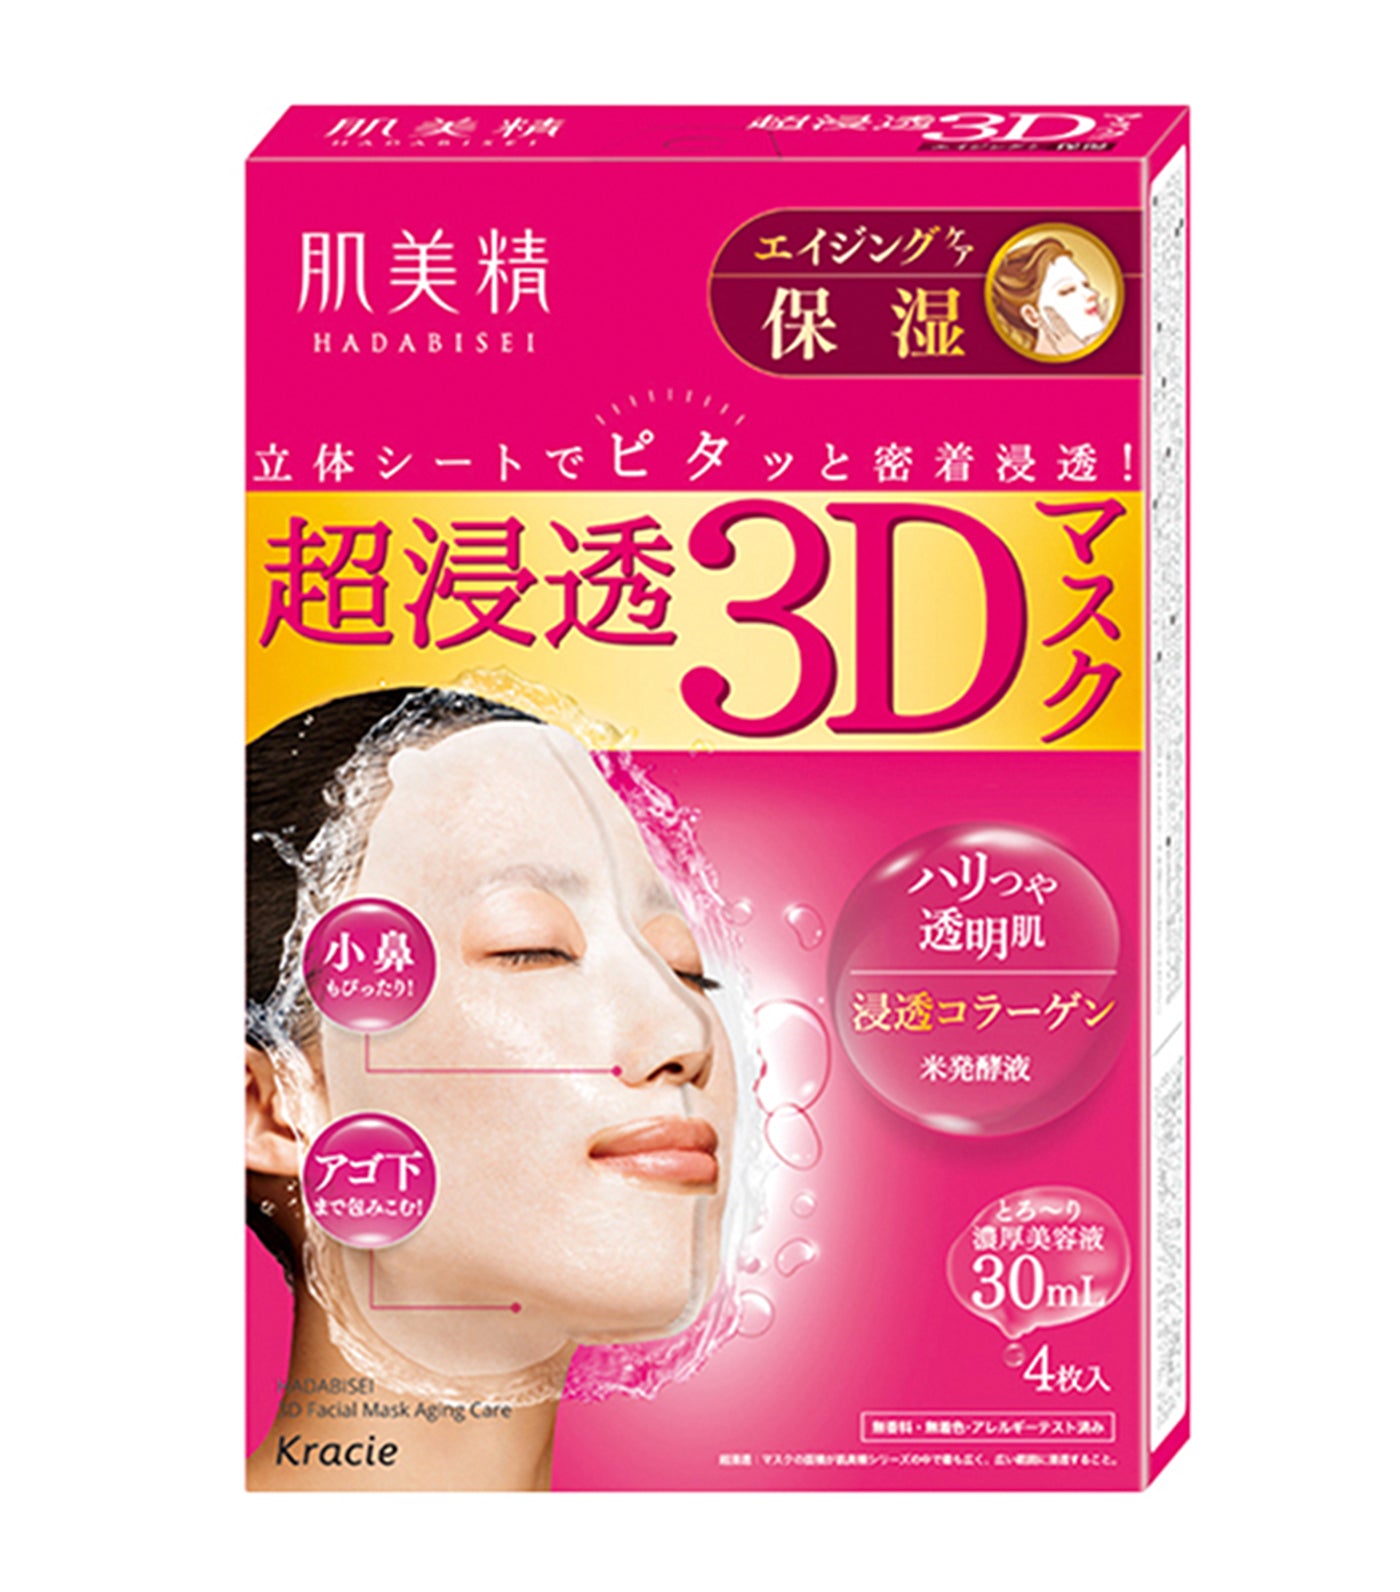 Hadabisei 3D Aging-care Moisturizing Face Mask